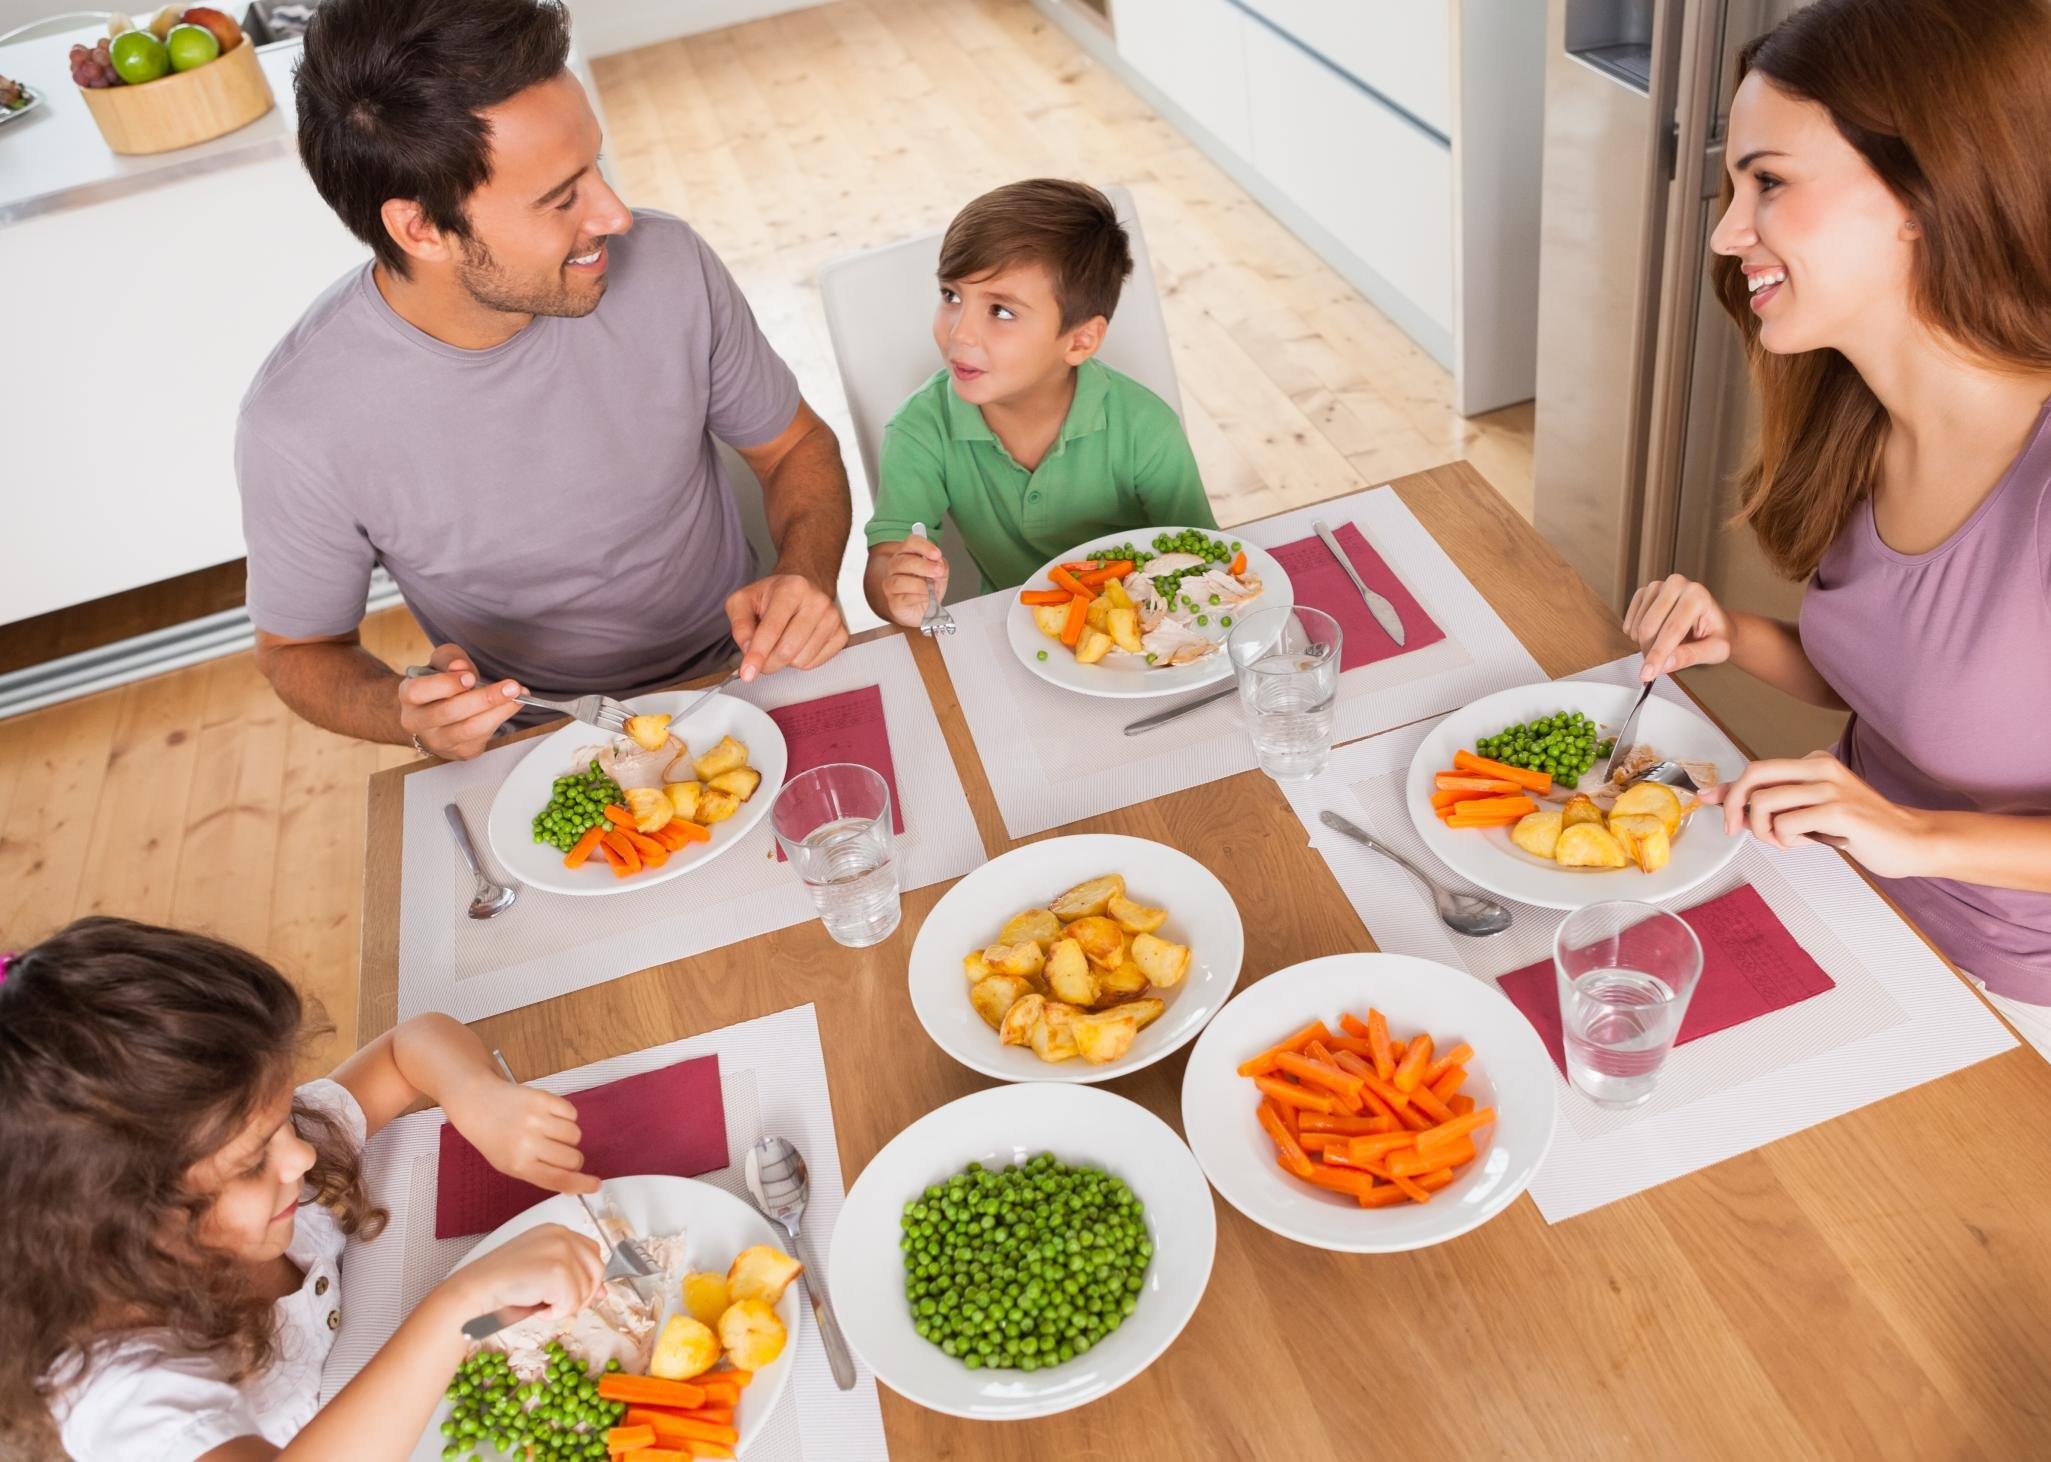 Разная культура питания. Питание детей. Ужин с семьей. Семья обед. Здоровое питание в семье.